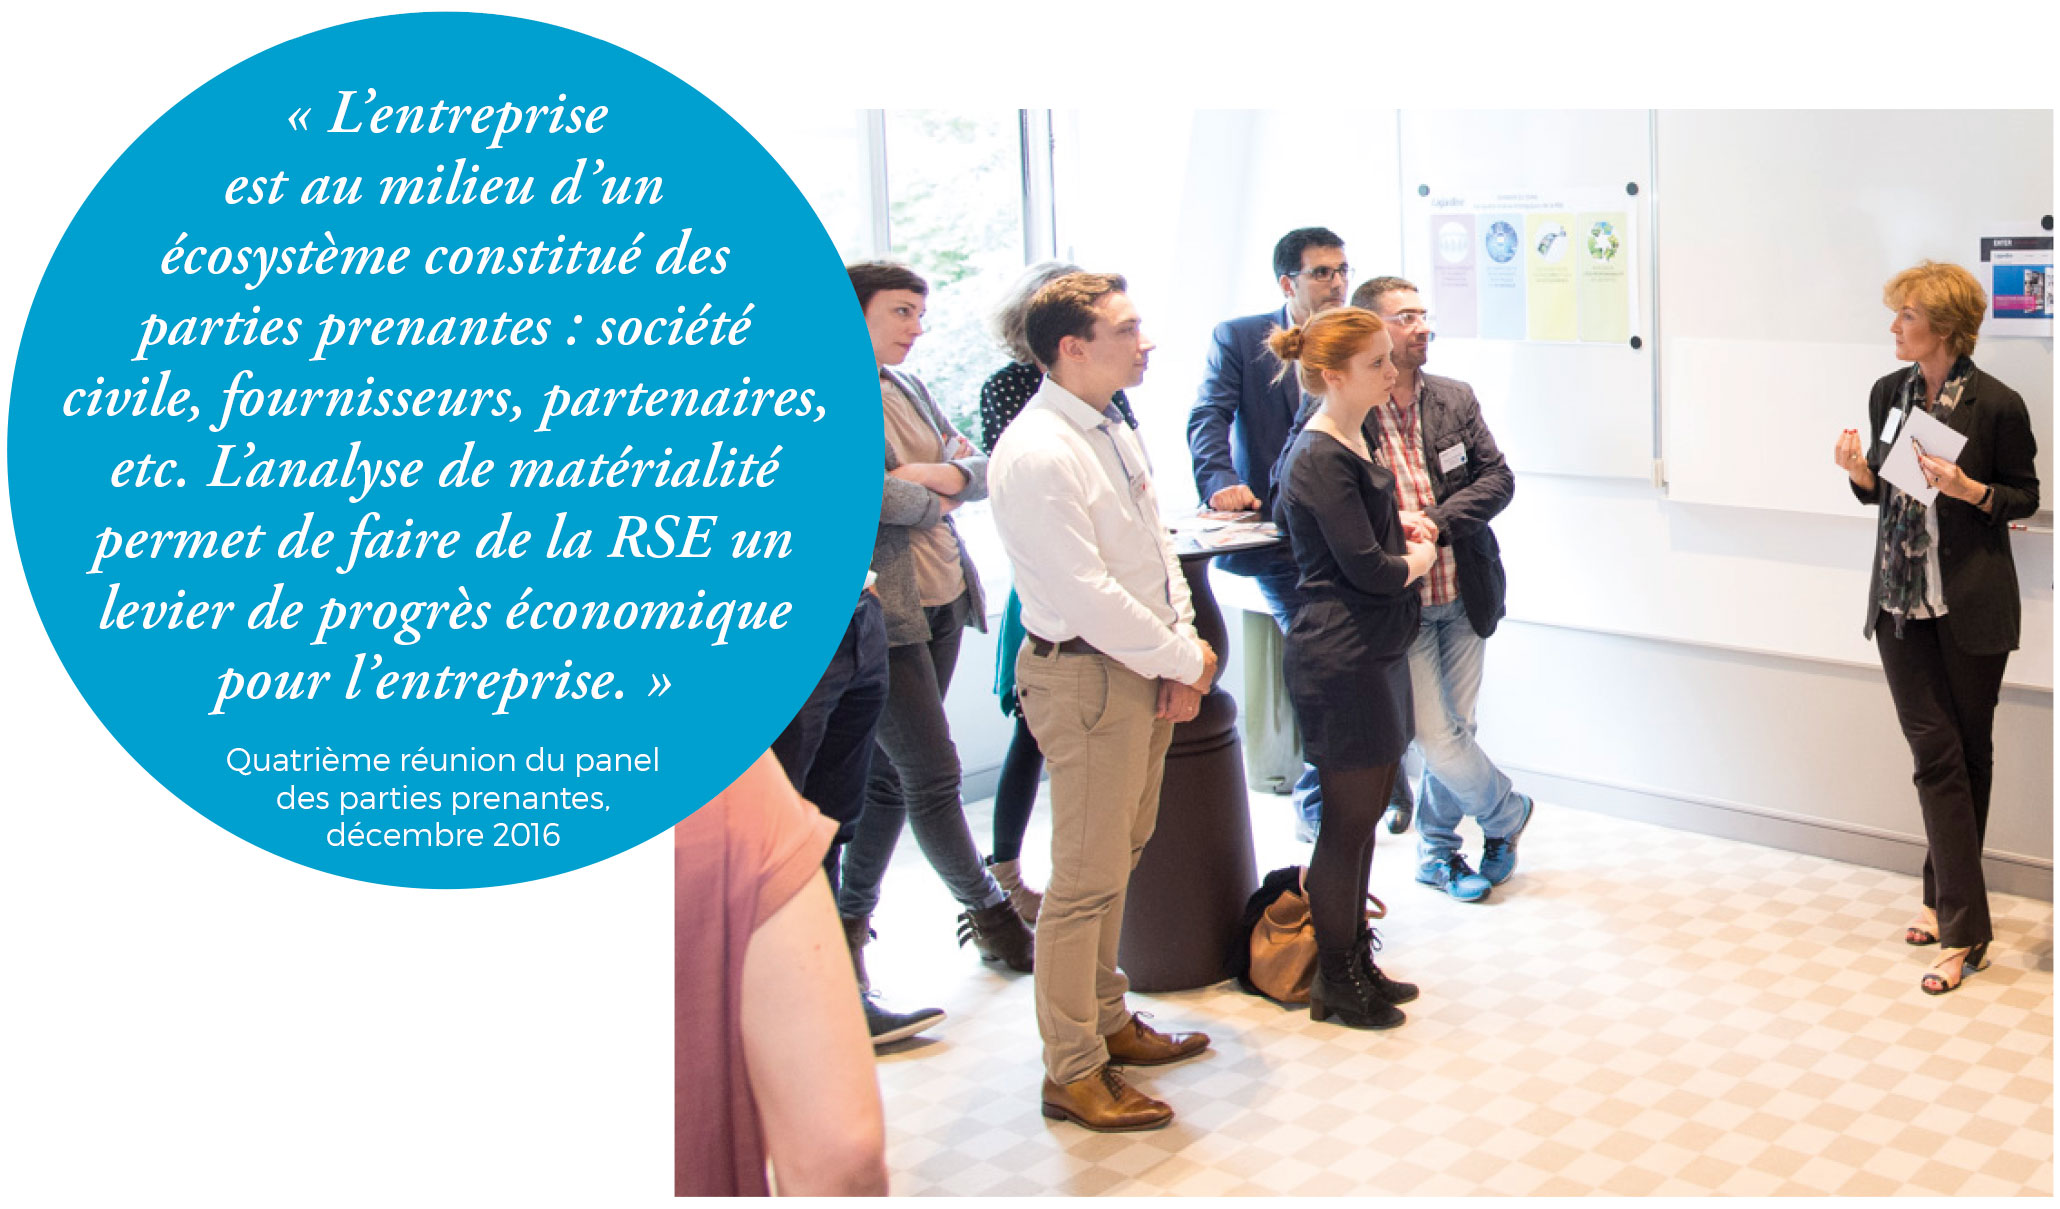 Atelier « Développement durable et RSE » lors de la journée d’intégration du groupe Lagardère, juin 2016 – Paris (France)